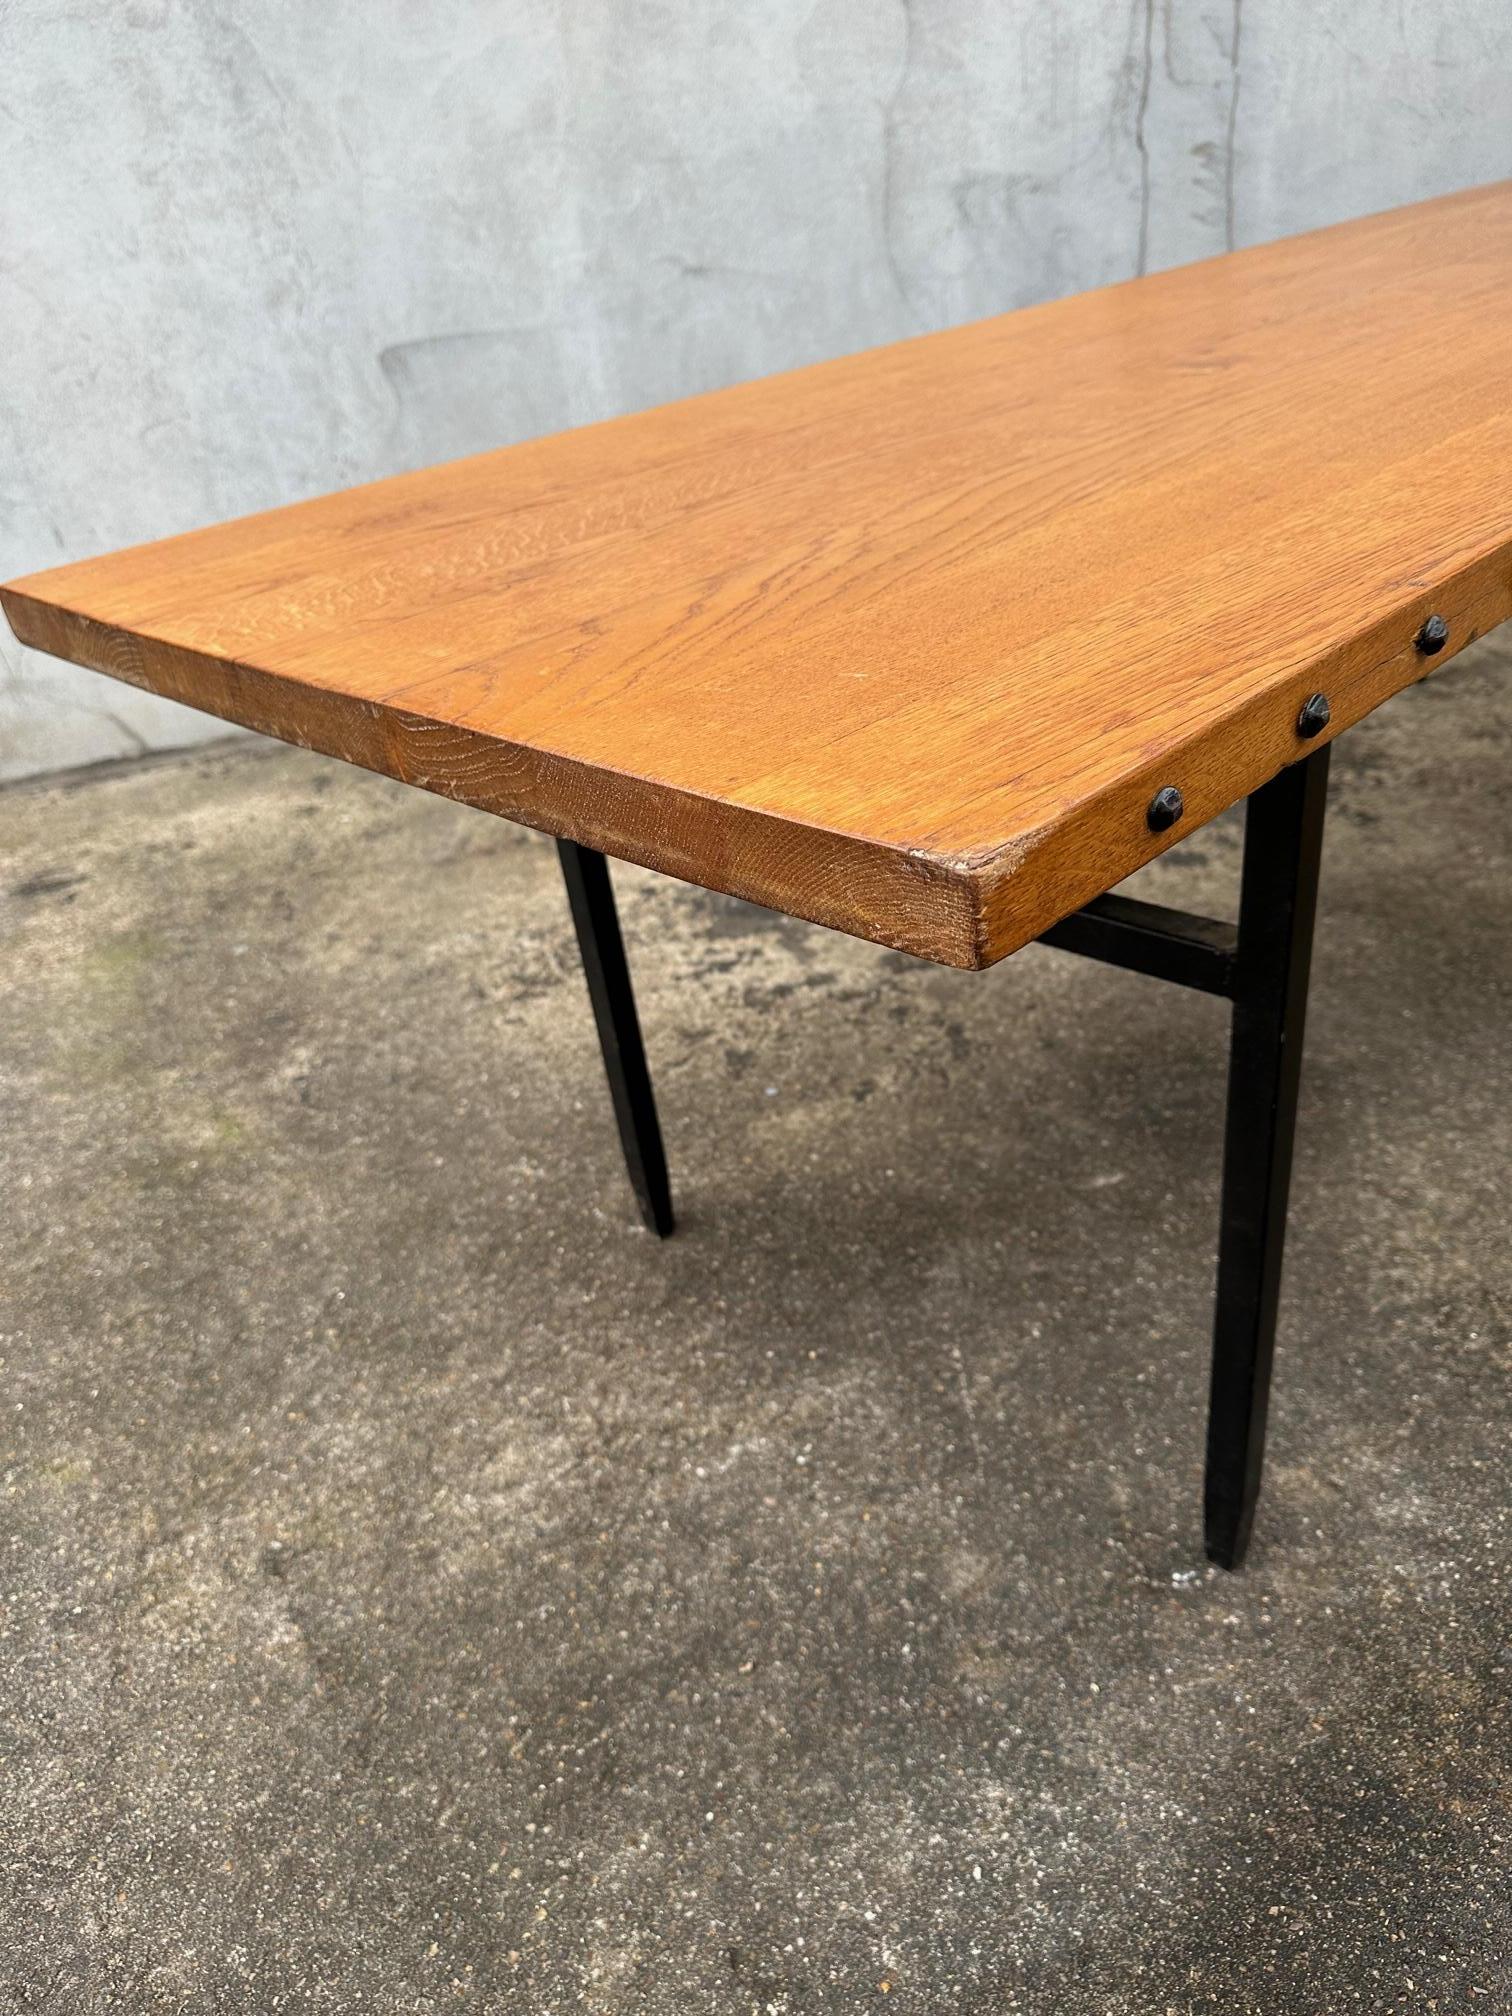 Rare table des ateliers Marolles.
Elle est magnifique par sa taille et sa conception.
250 cm de longueur.